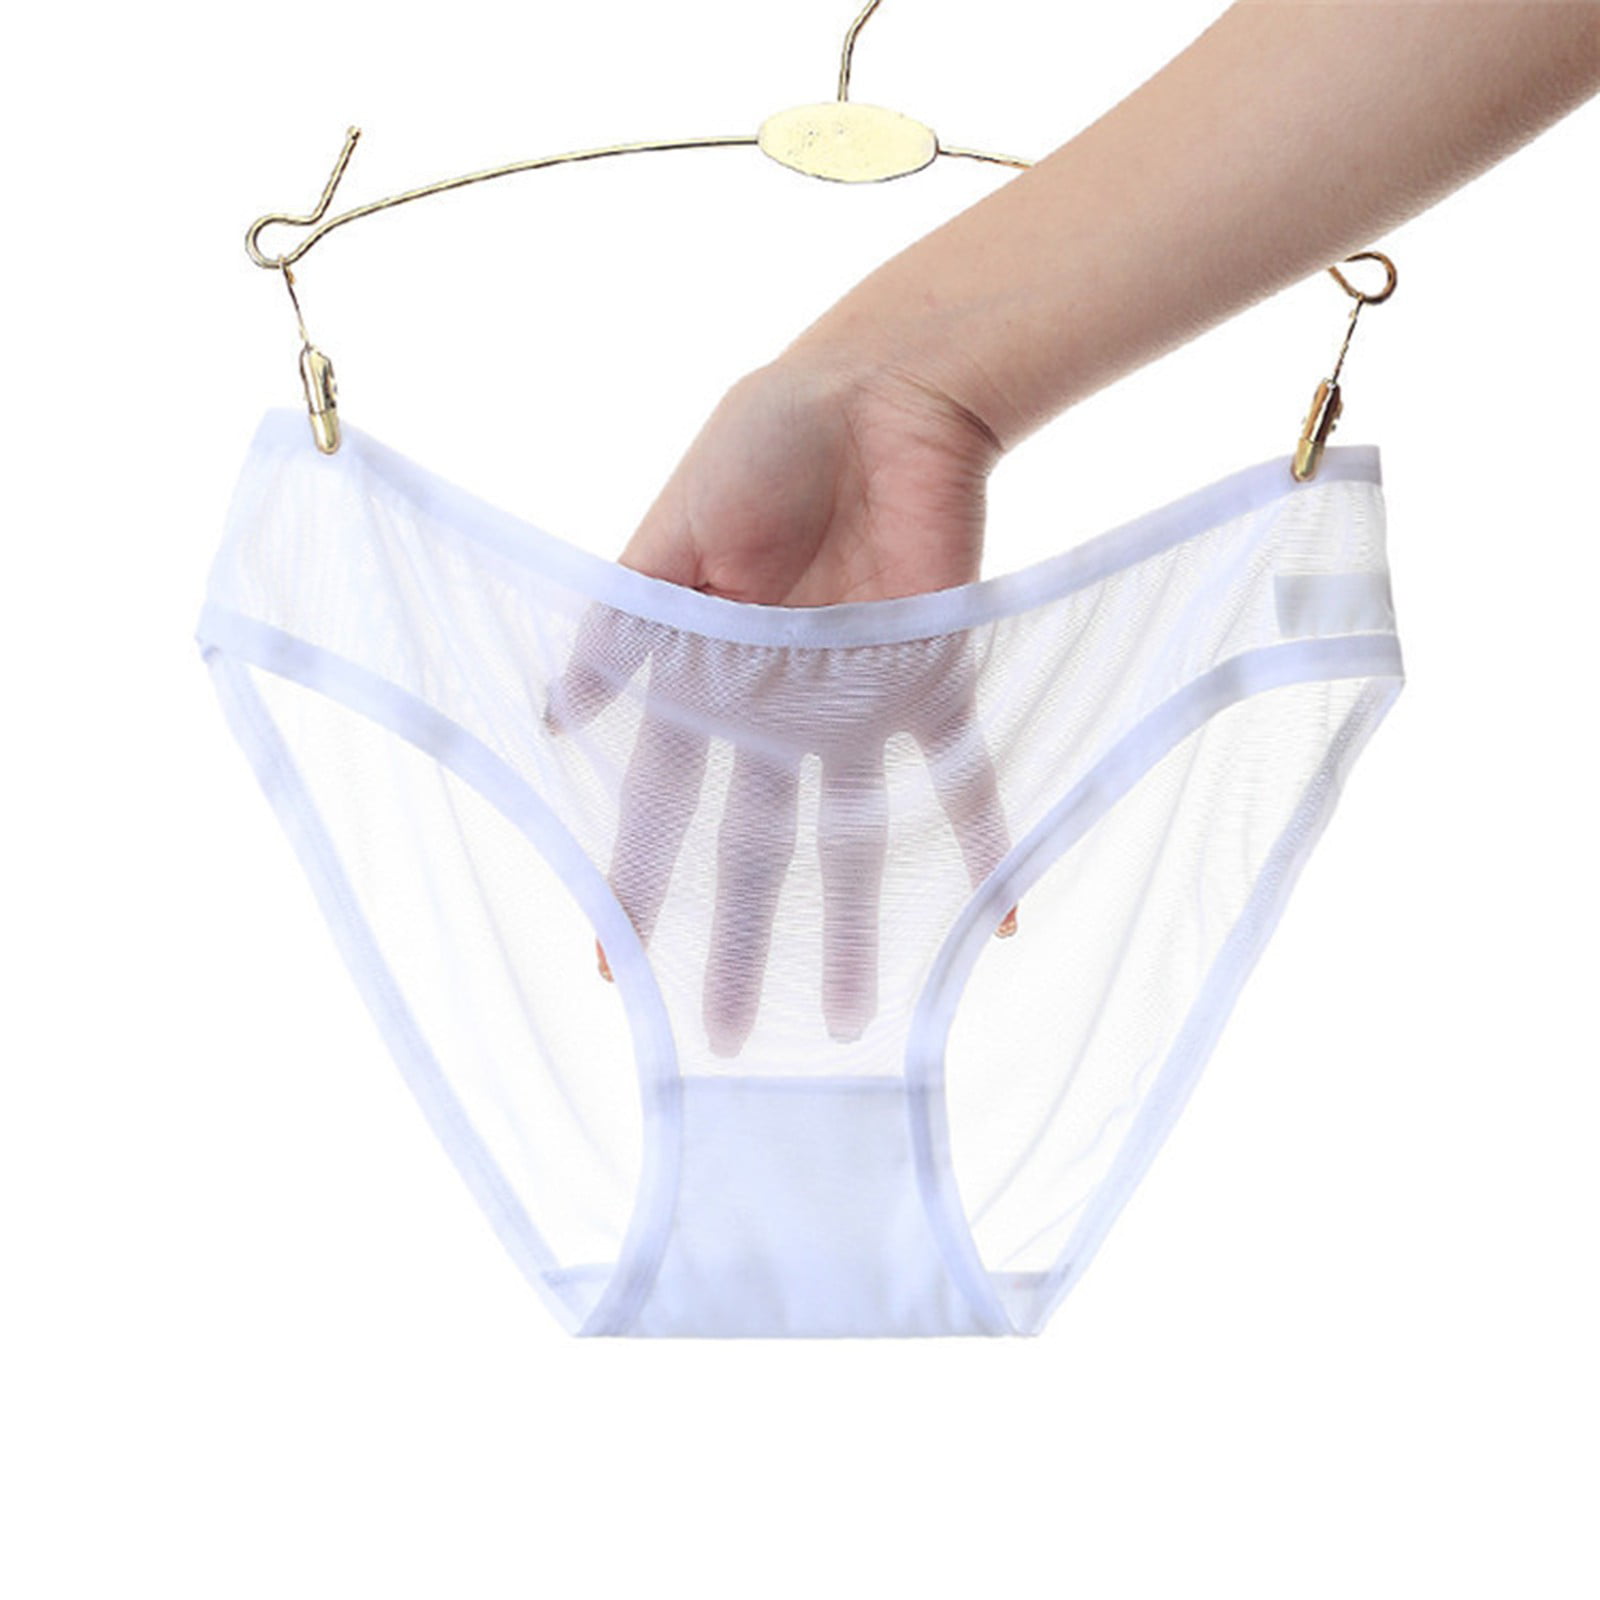 Womens Low Waist Sheer Mesh Briefs Cute Seamless Panties For Women 